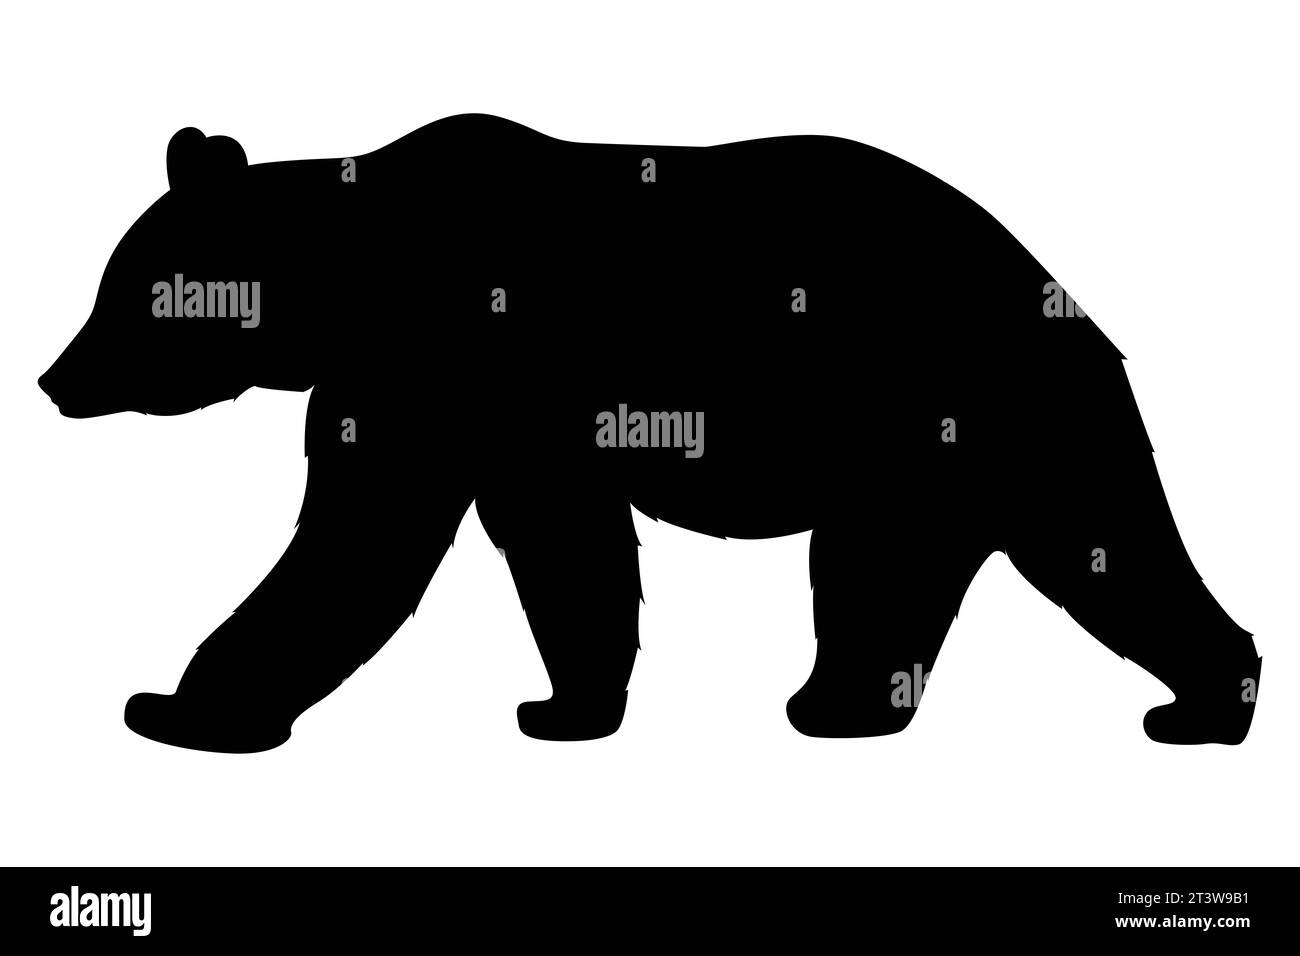 Ilustración de un conjunto de silueta de oso dibujado a mano Ilustración del Vector